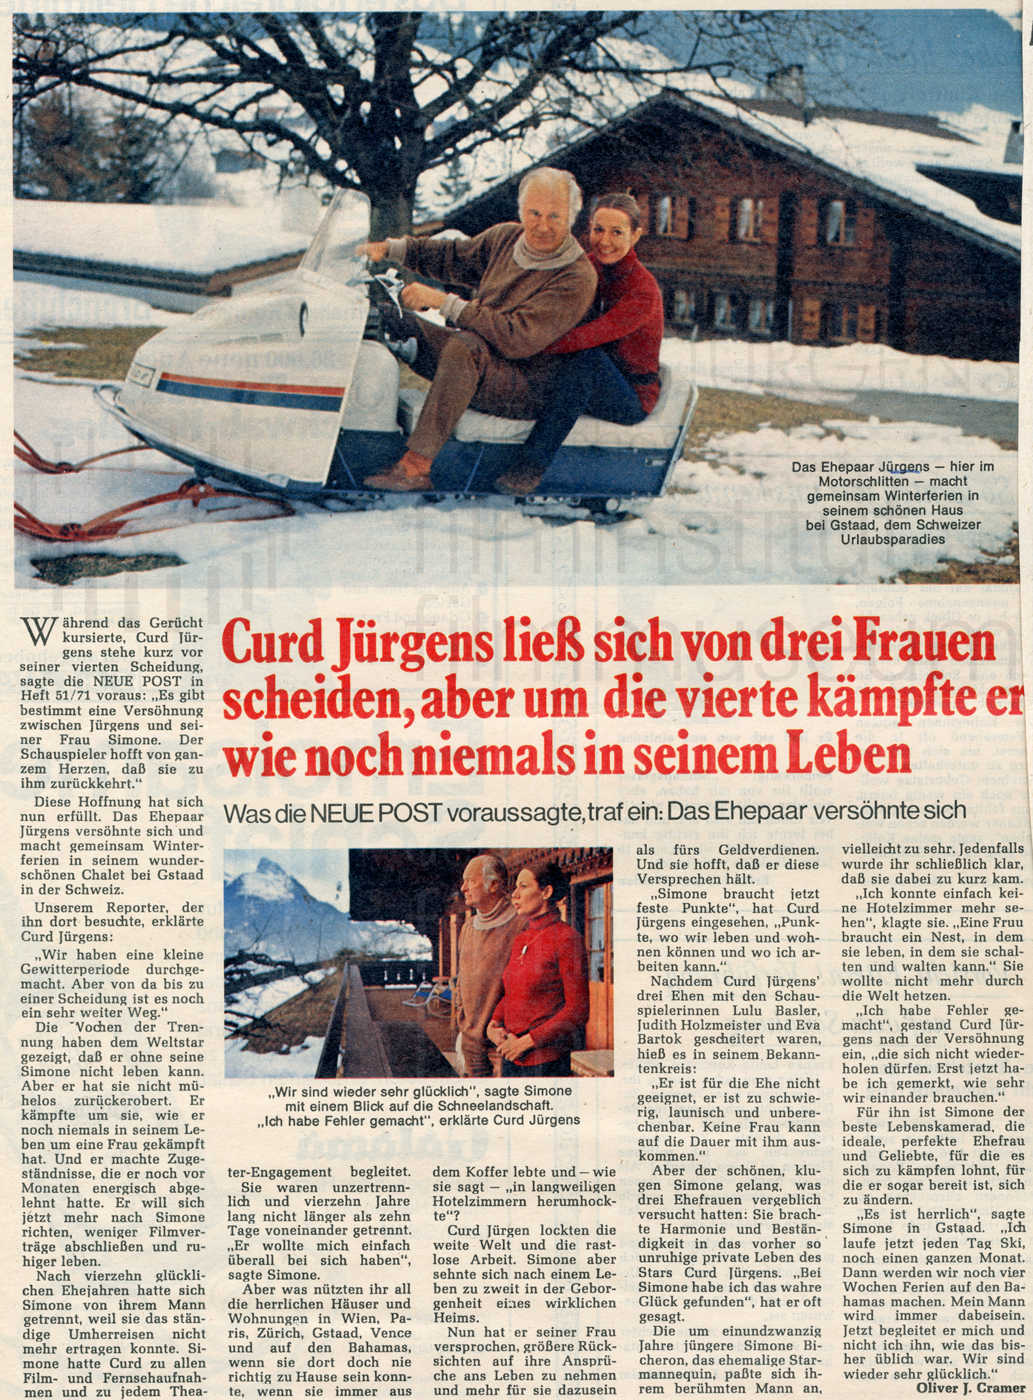 Neue Post: "Curd Jürgens ließ sich von drei Frauen scheiden, aber [...]", Nr. 5, 1972